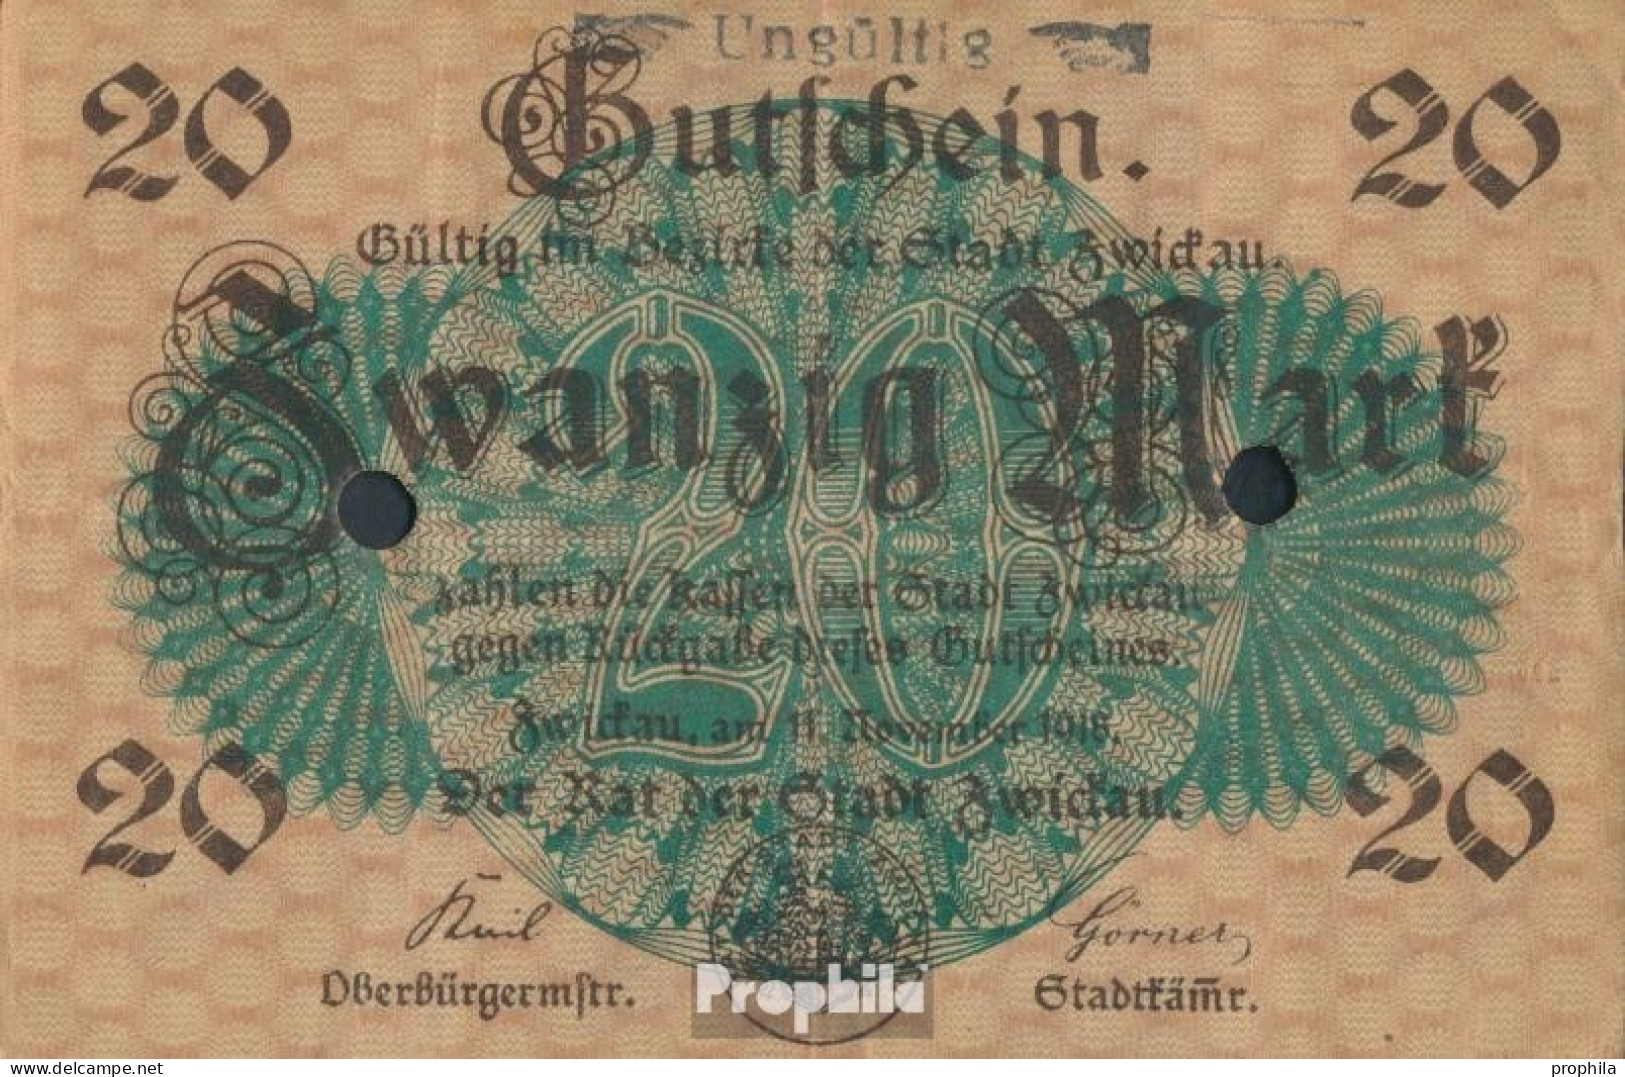 Zwickau Notgeldschein Der Stadt Zwickau, Entwertet Gebraucht (III) 1918 20 Mark Zwickau - 20 Mark